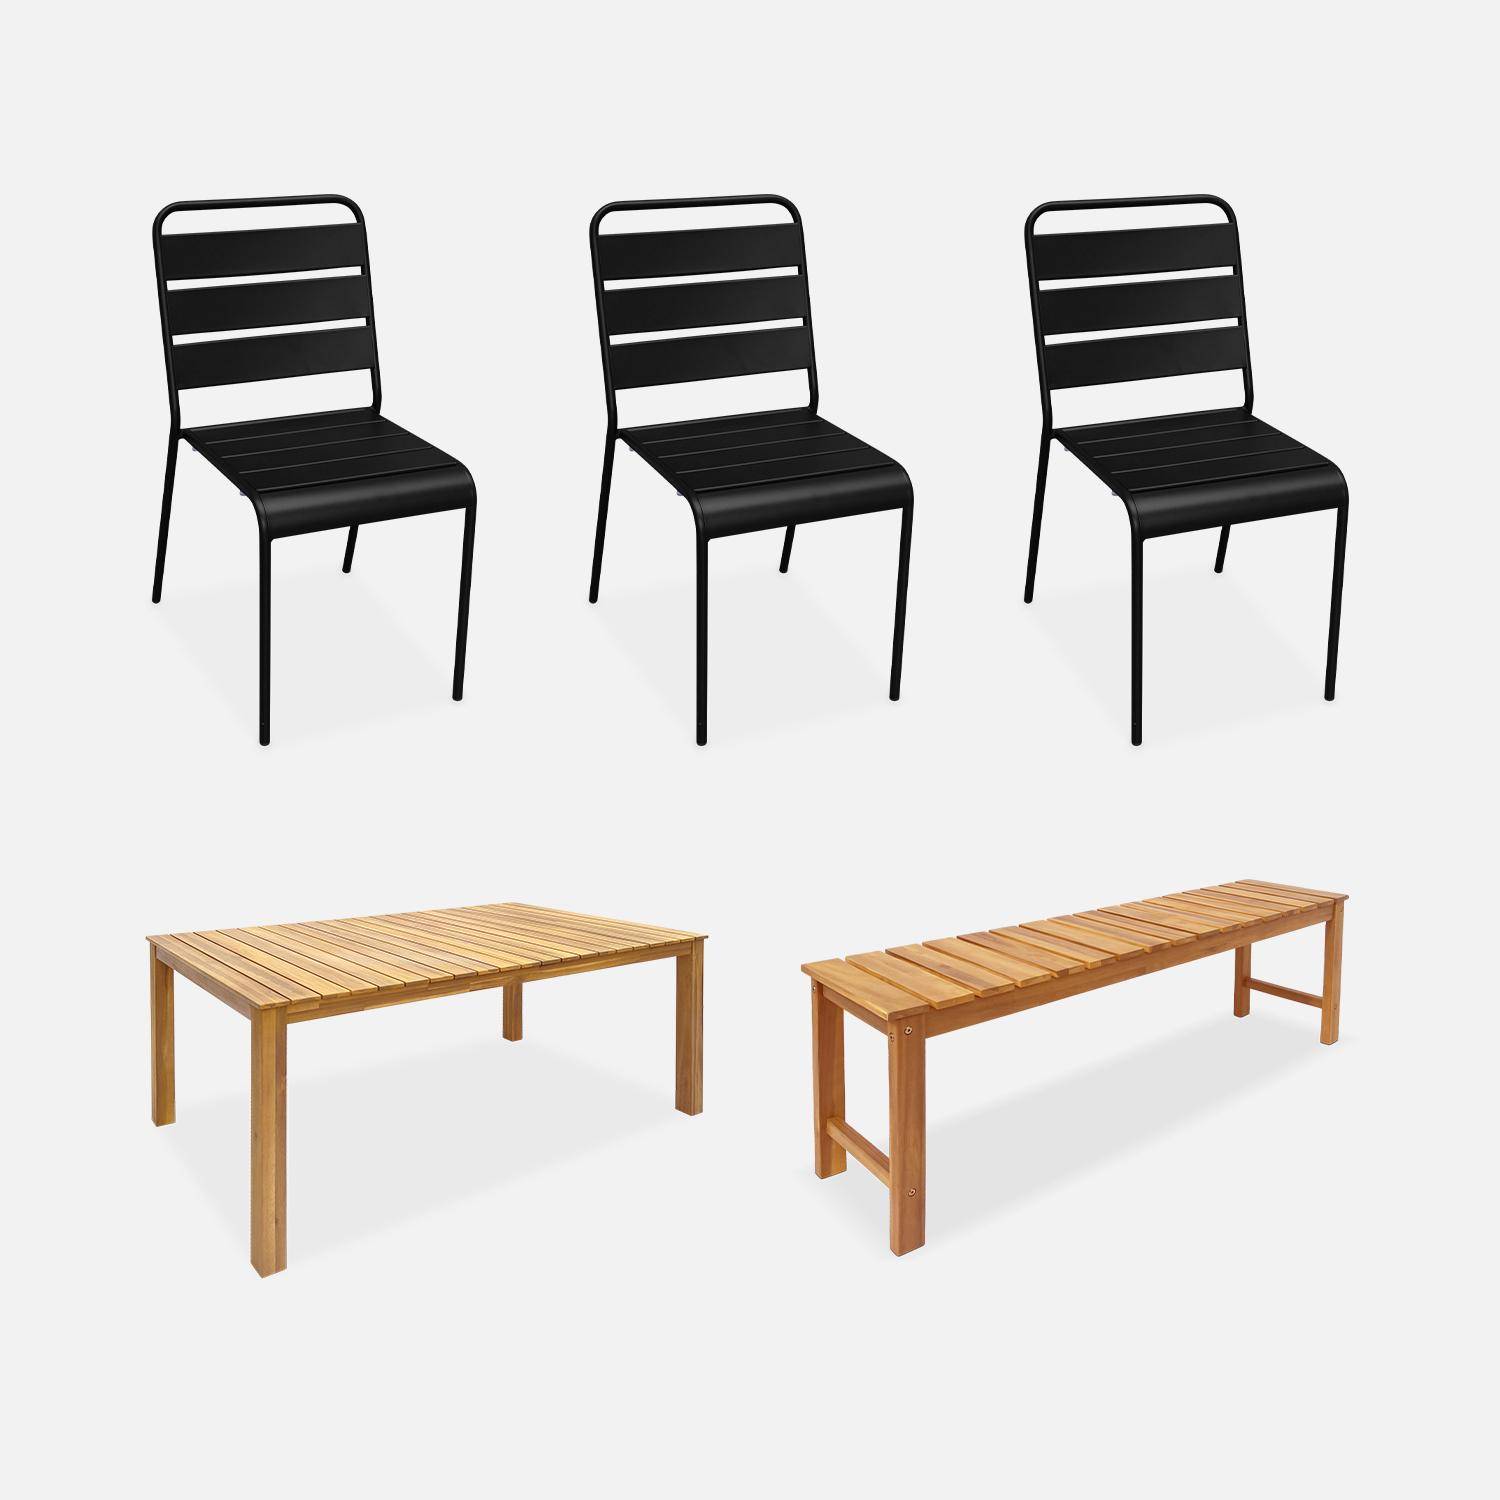 Table intérieur / extérieur bois d'acacia + banc 3 places + 3 chaises en métal noir,sweeek,Photo1